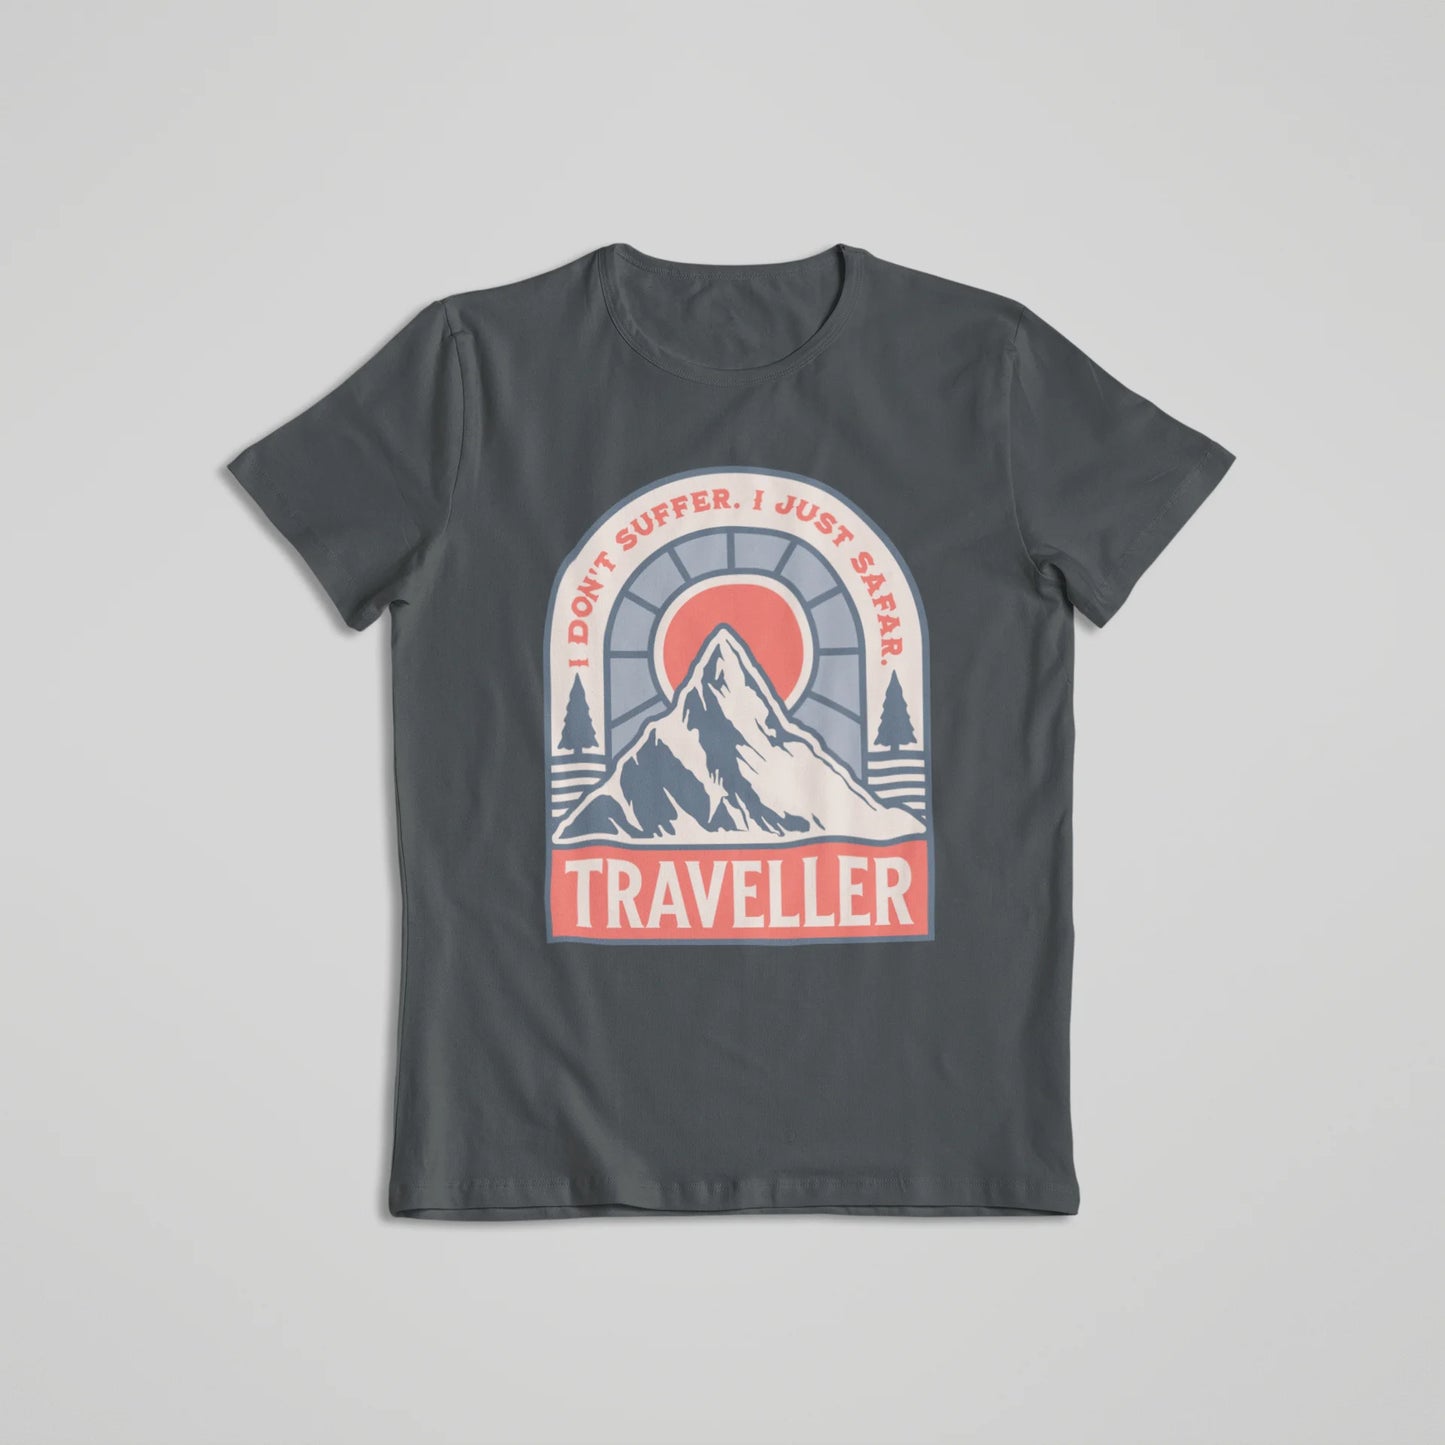 Safar Suffer Traveller - T-shirt Steel Grey